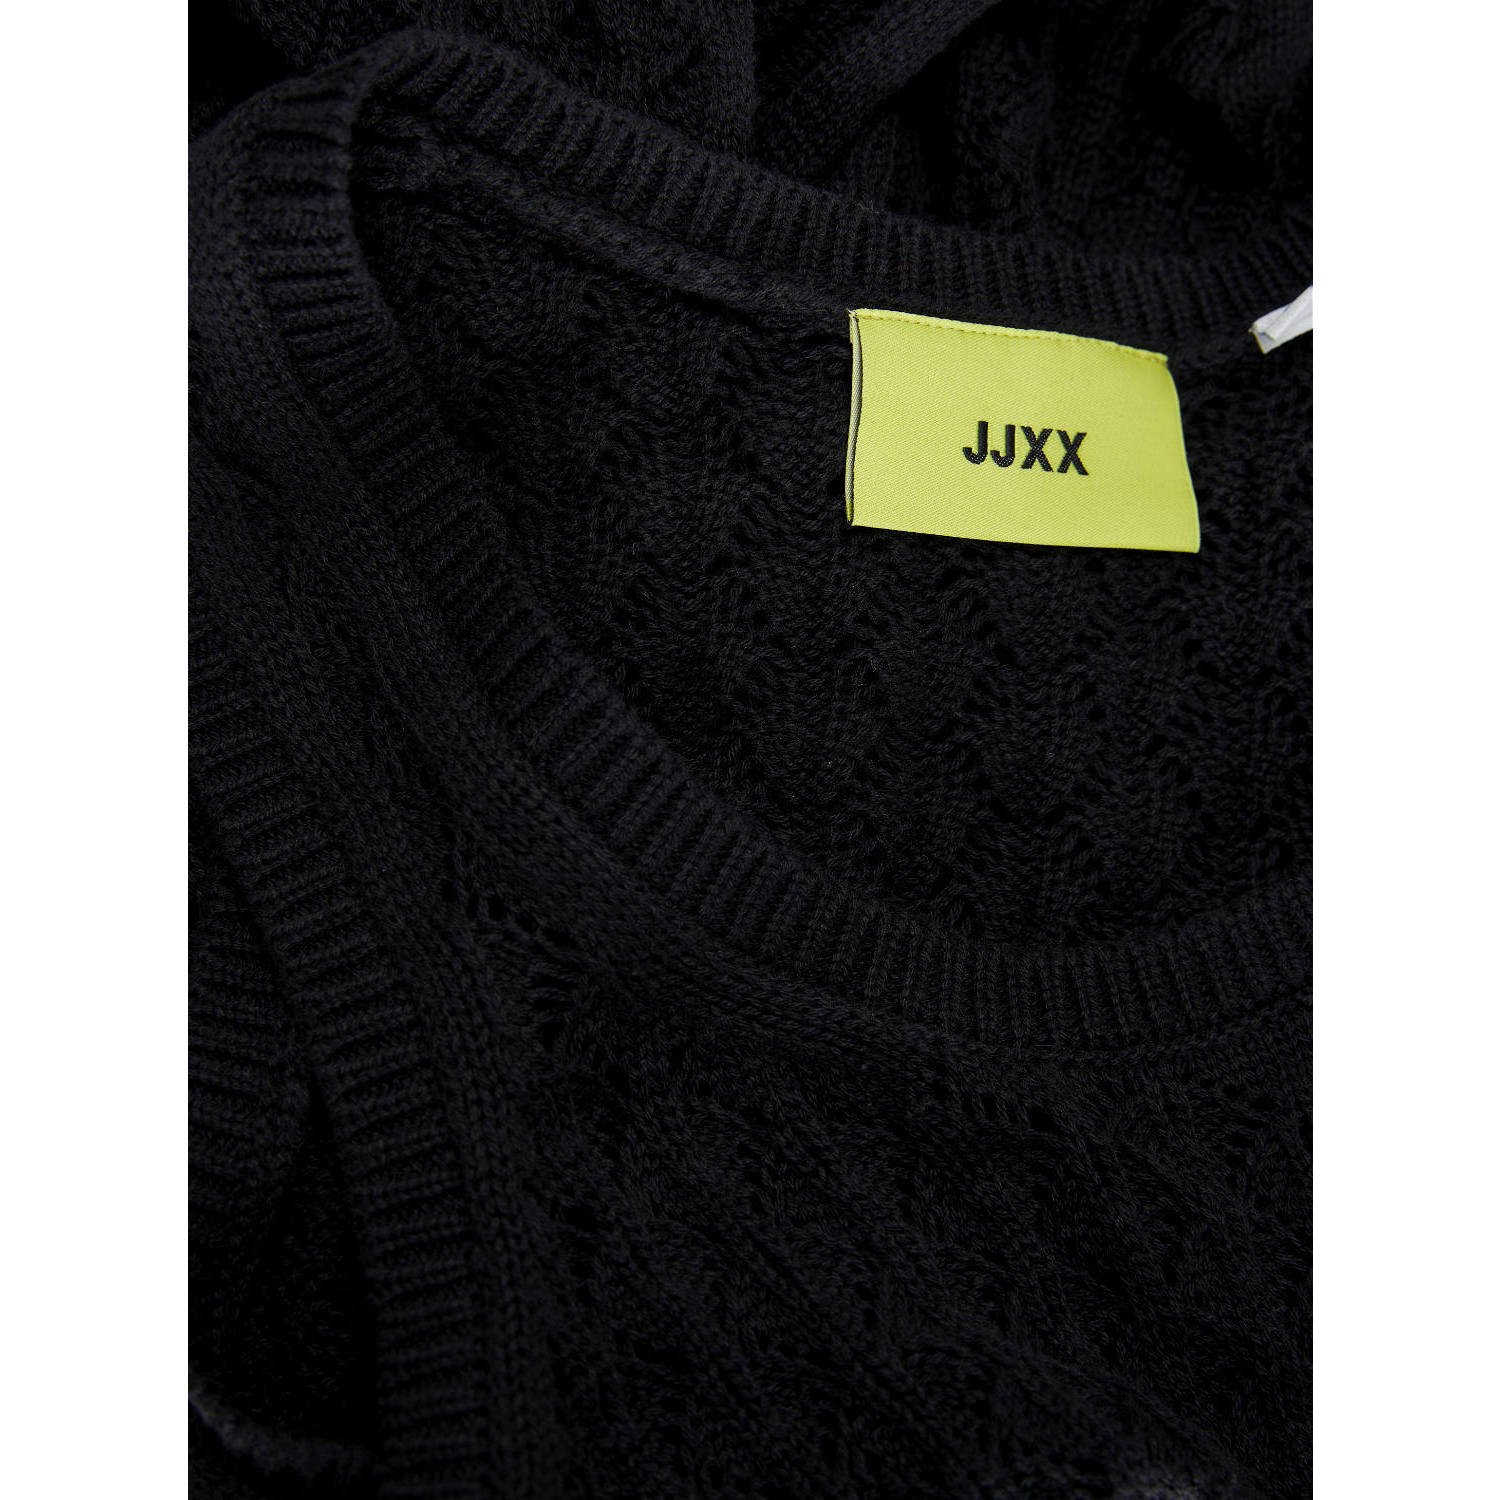 JJXX crochet jurk zwart